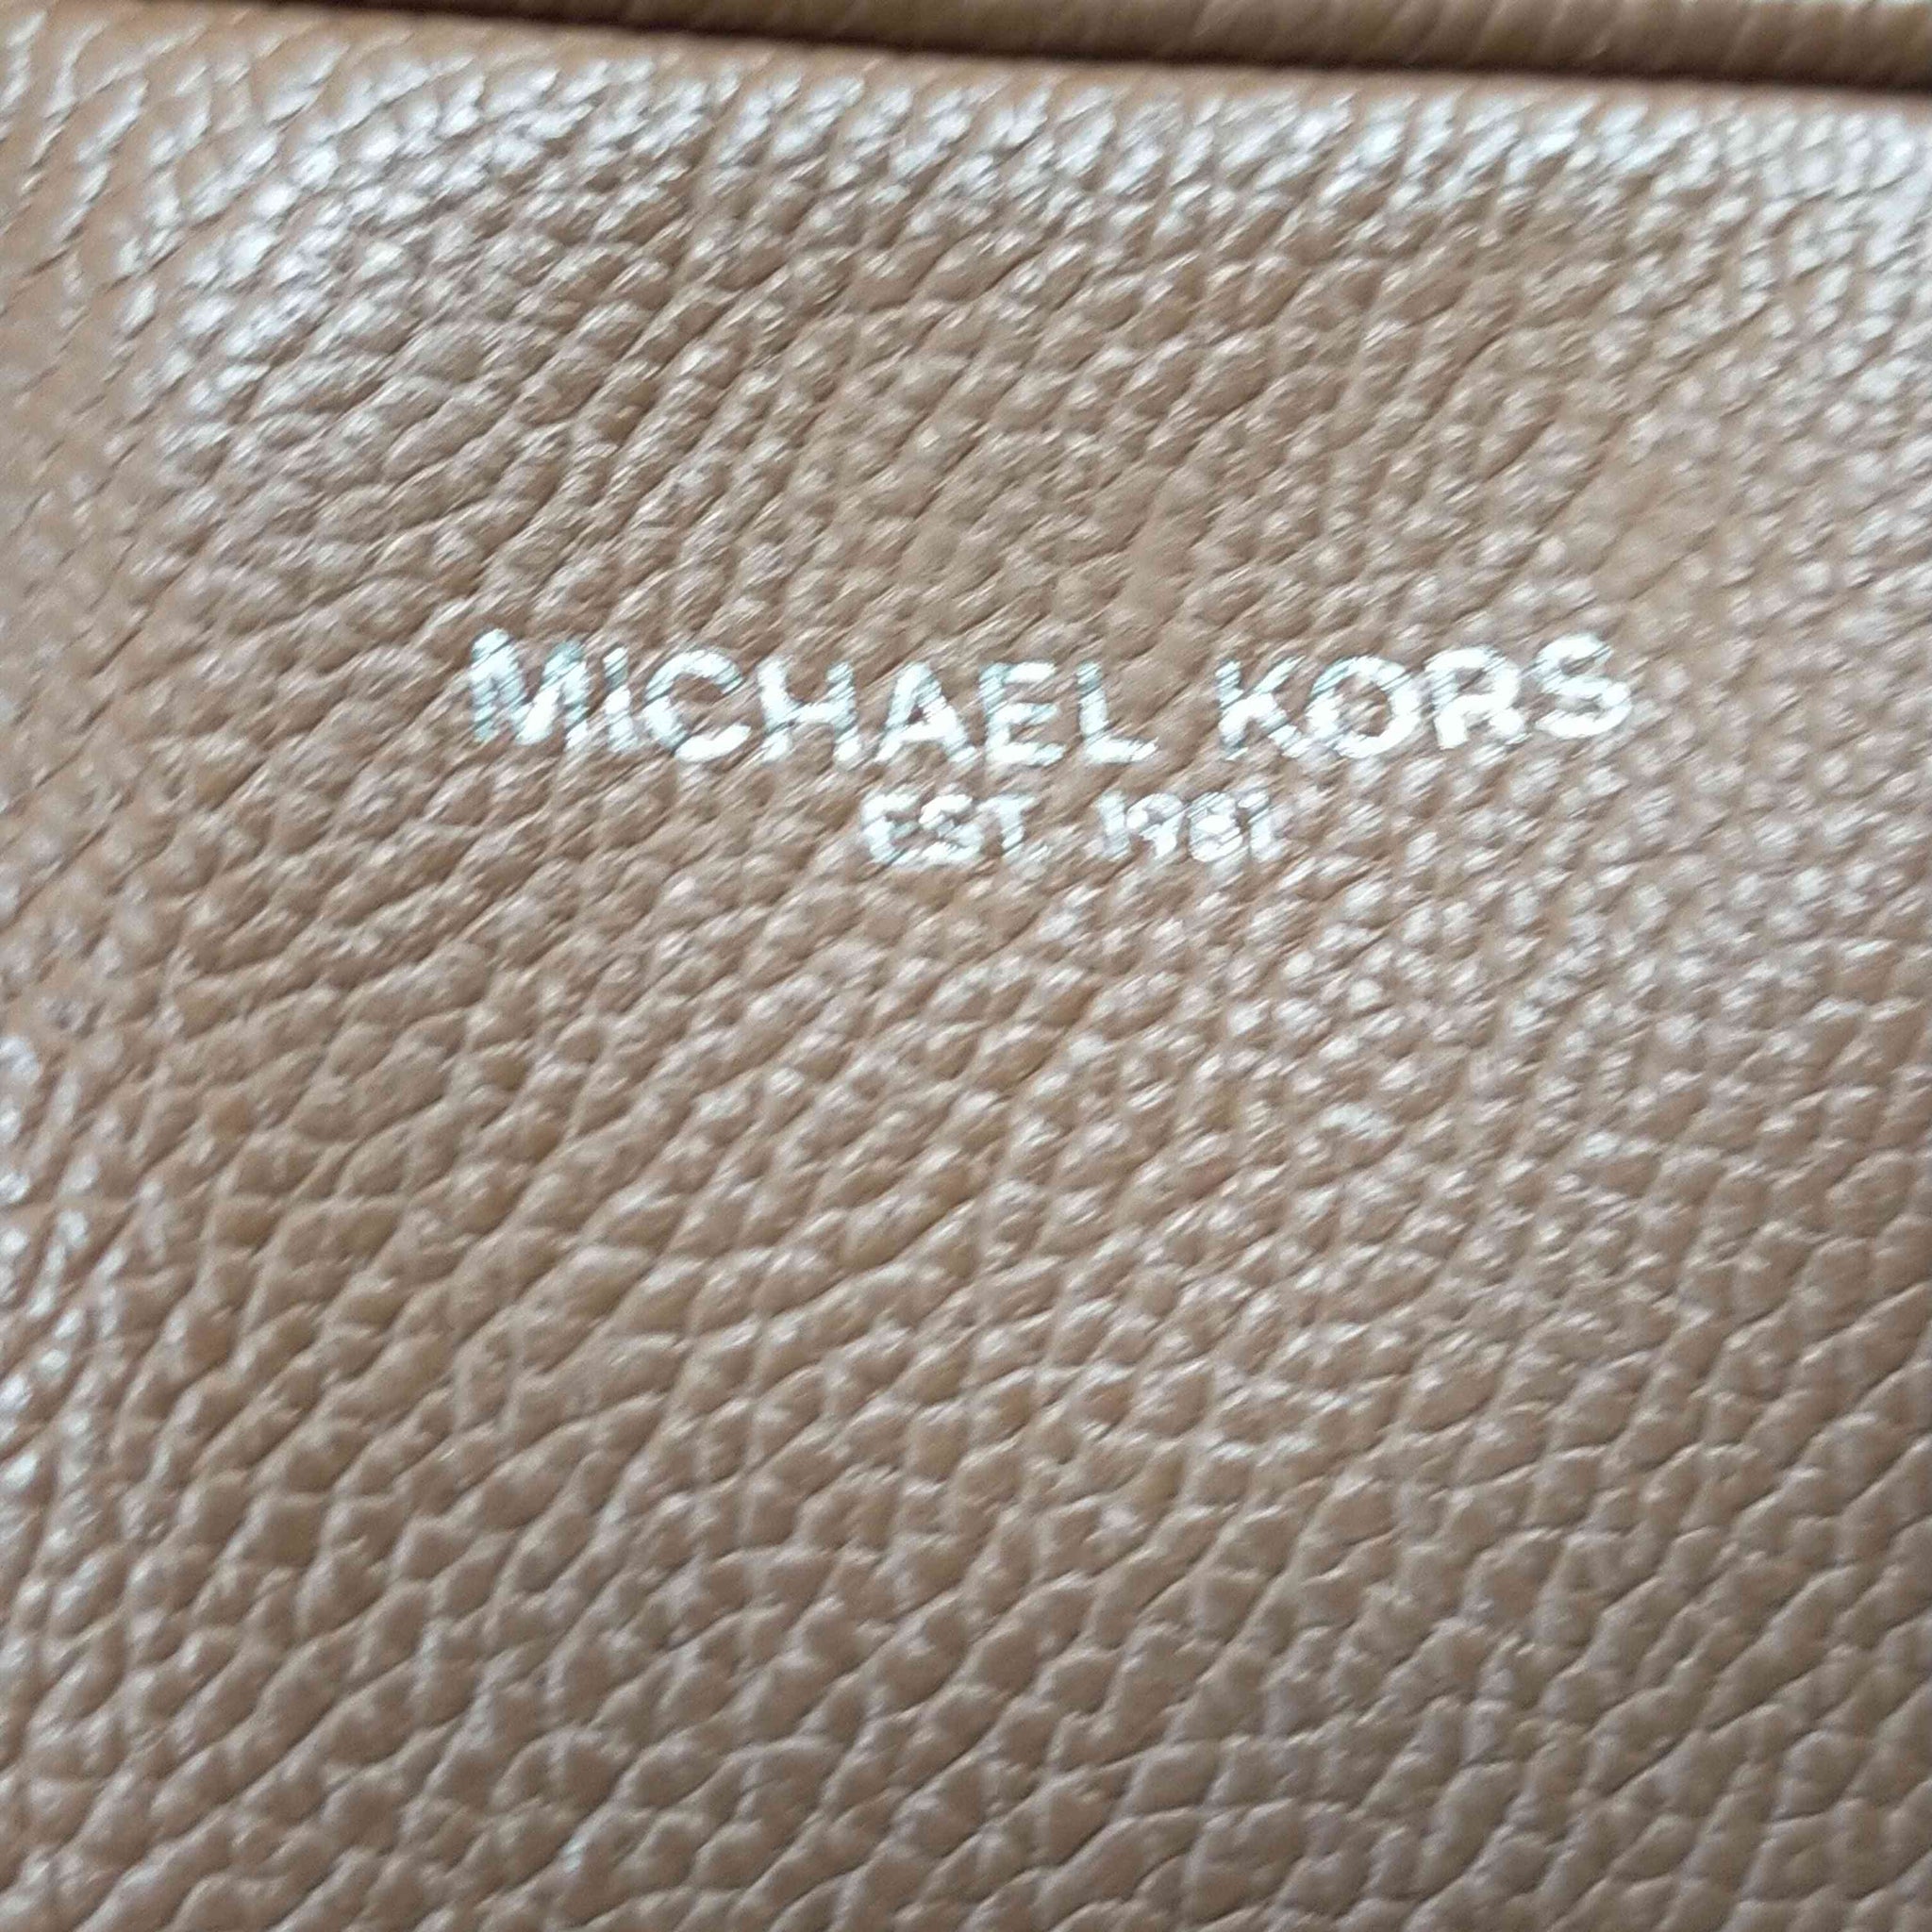 Michael Kors(マイケルコース)レザーブリーフケース ビジネスショルダーバッグ